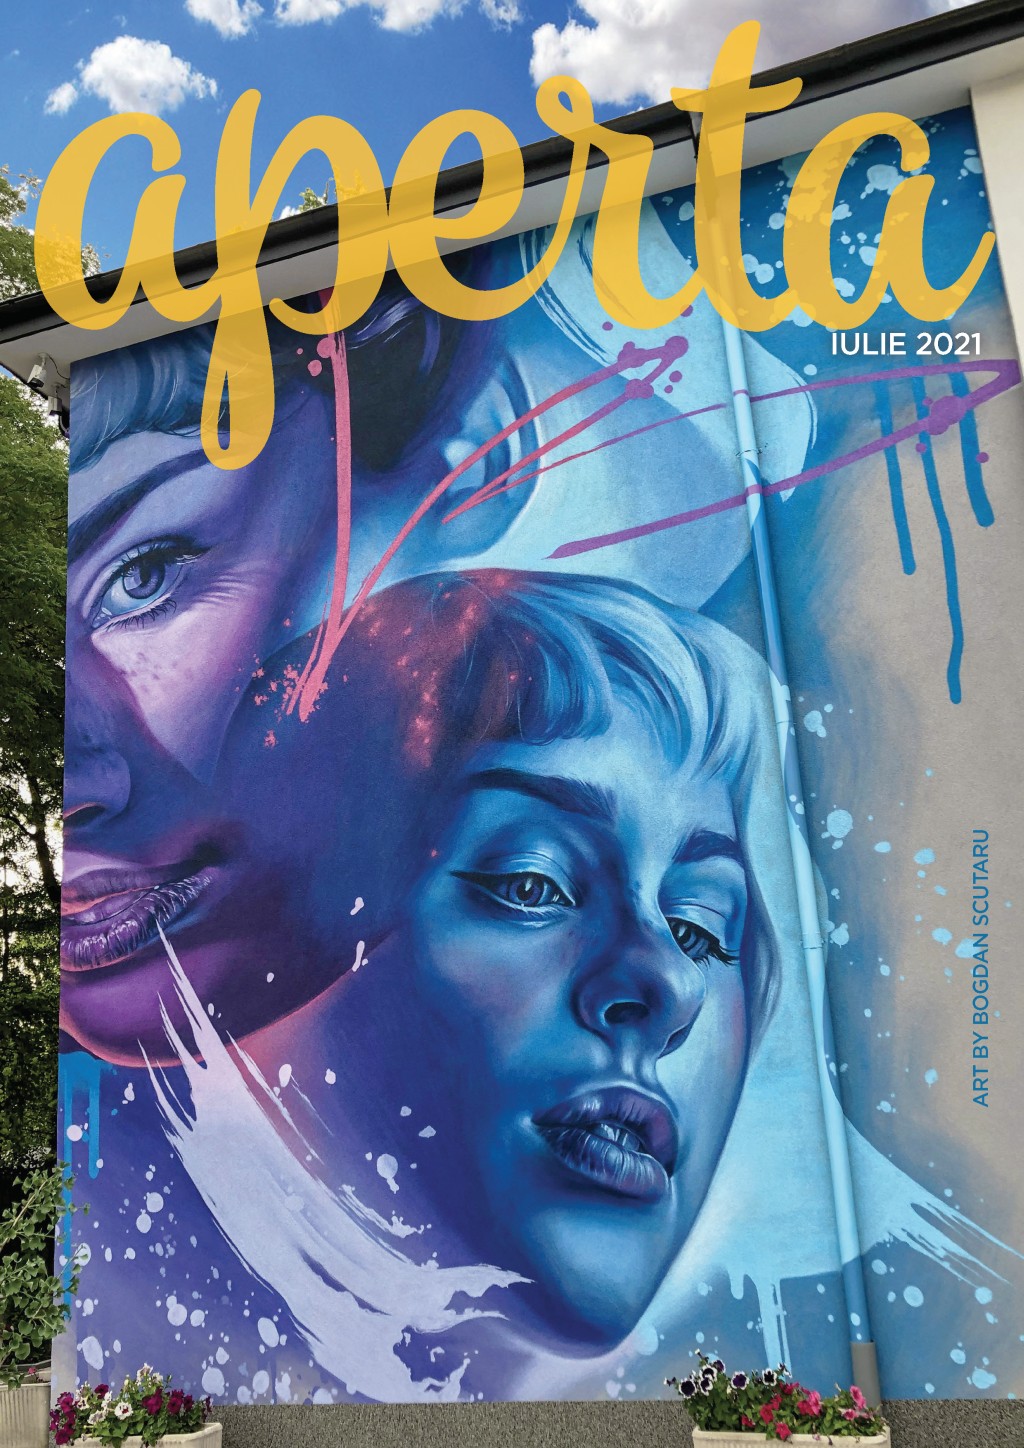 Aperta Magazin – iulie 2021